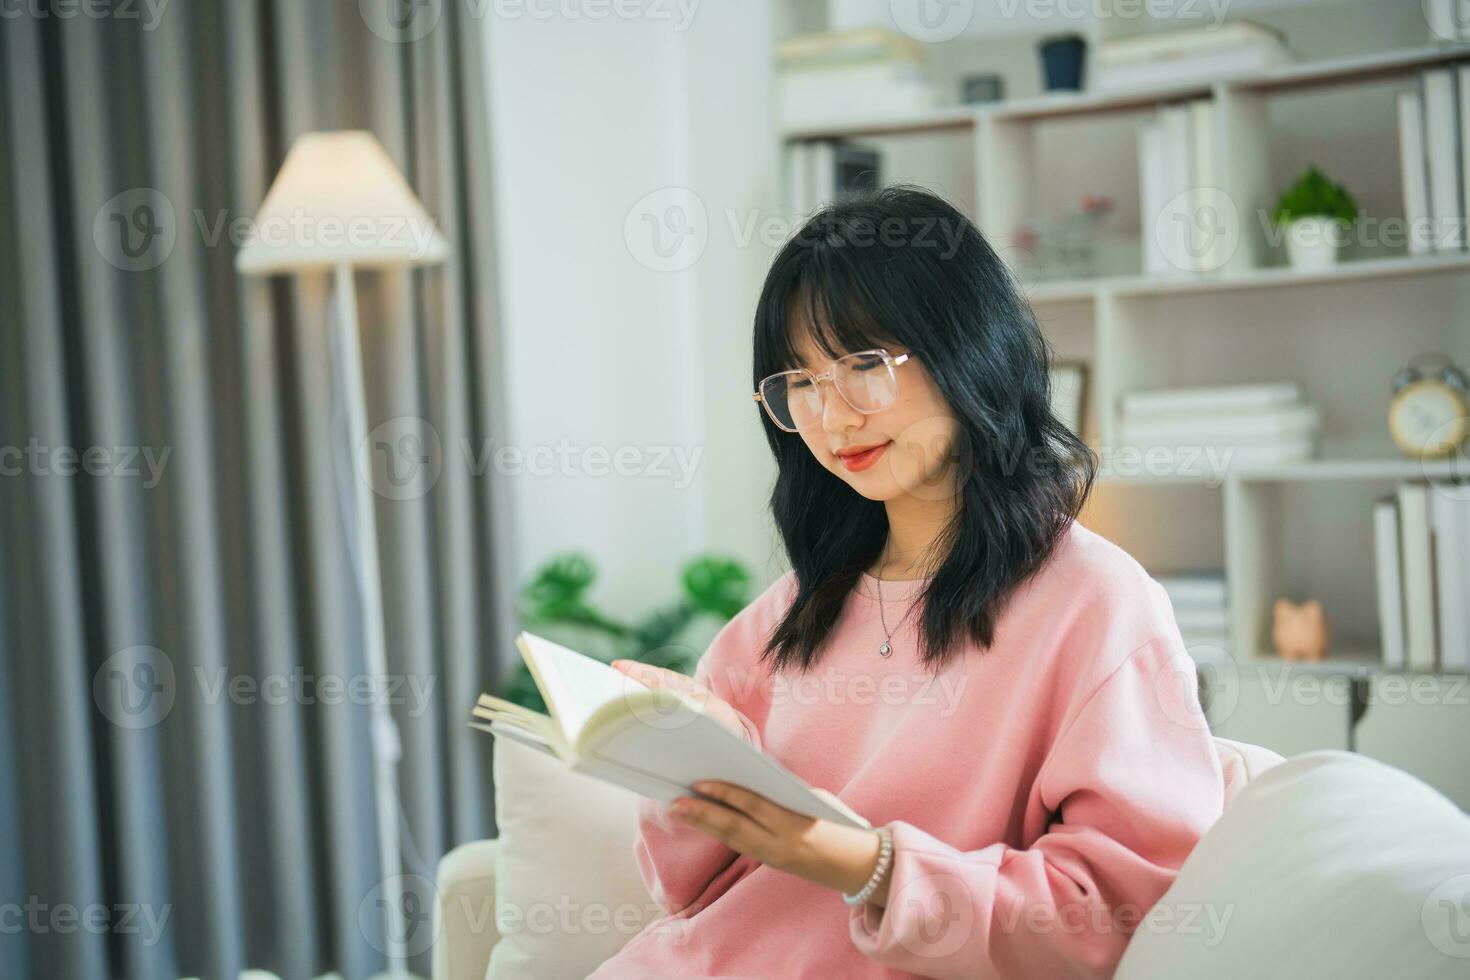 froh glücklich asiatisch Frau lächelnd und lesen Buch während Sitzung auf Couch Sofa im Leben Zimmer beim heim. asiatisch Frauen entspannen lesen Buch Lächeln beim Sofa im das Haus. Aktivität Hobby beim Haus Konzept. foto